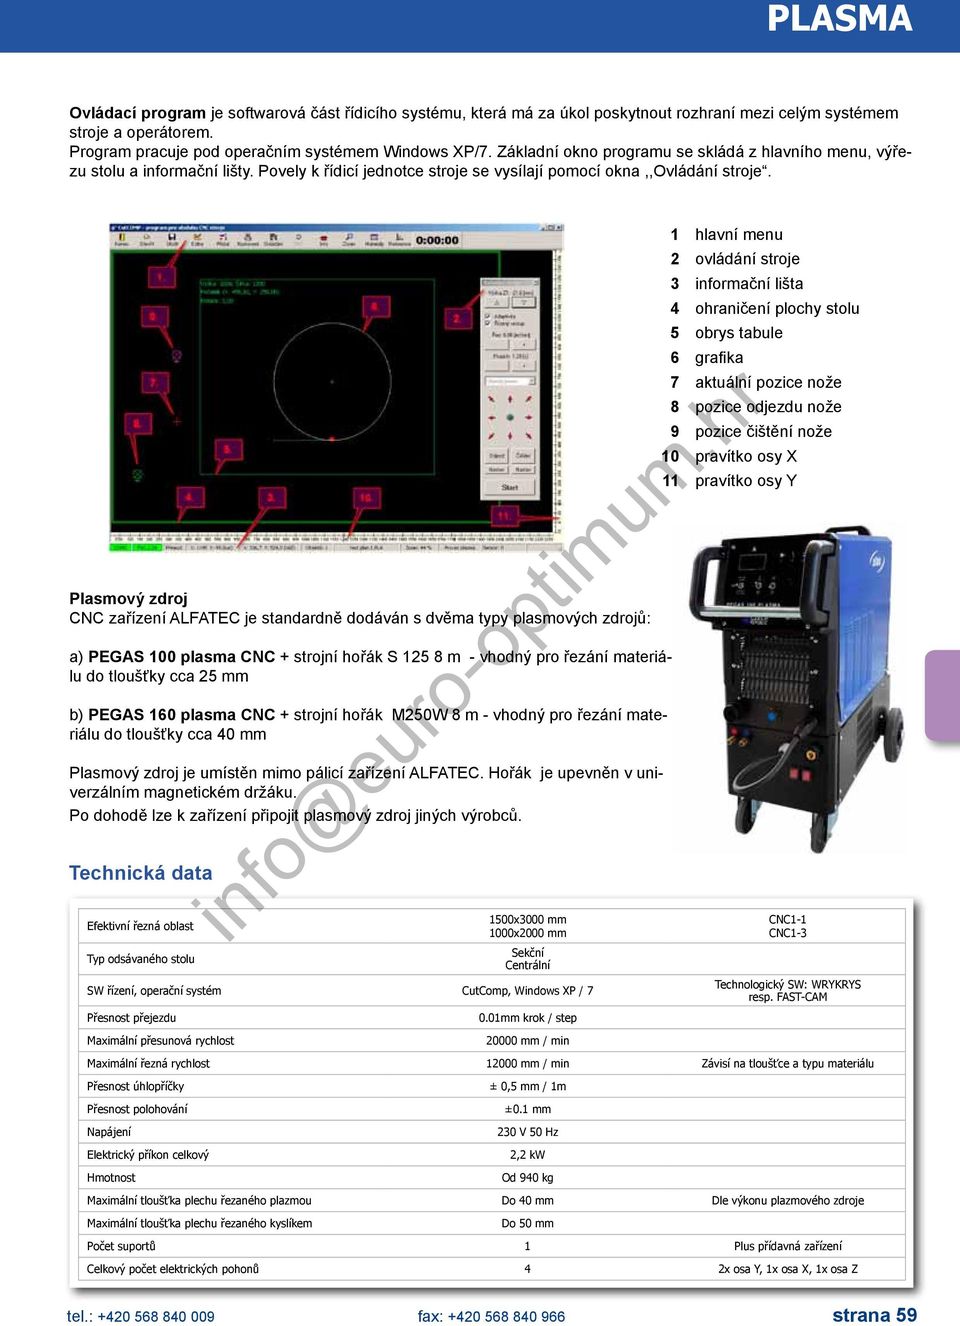 Plasmový zdroj CNC zařízení ALFATEC je standardně dodáván s dvěma typy plasmových zdrojů: a) PEGAS 00 plasma CNC + strojní hořák S 5 8 m - vhodný pro řezání materiálu do tloušťky cca 5 mm b) PEGAS 60